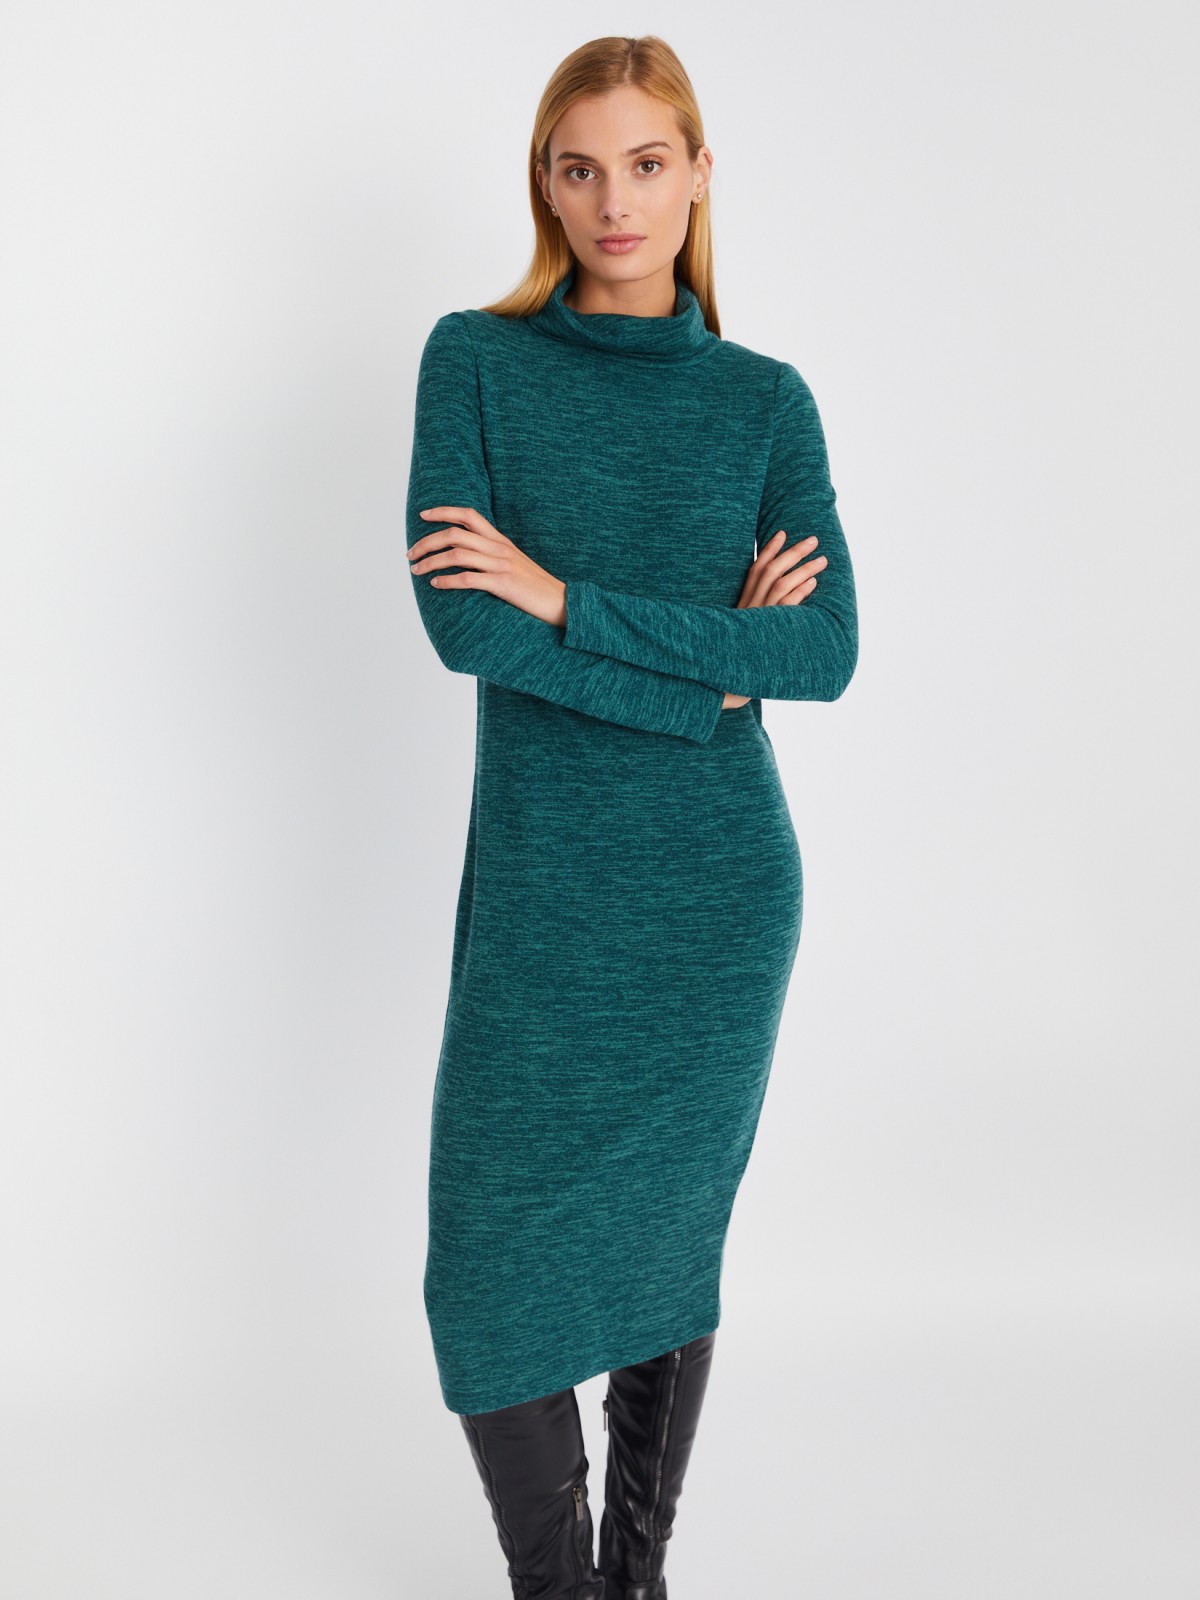 Трикотажное платье-свитер длины миди с высоким горлом zolla 02334819F062, цвет мятный, размер XS